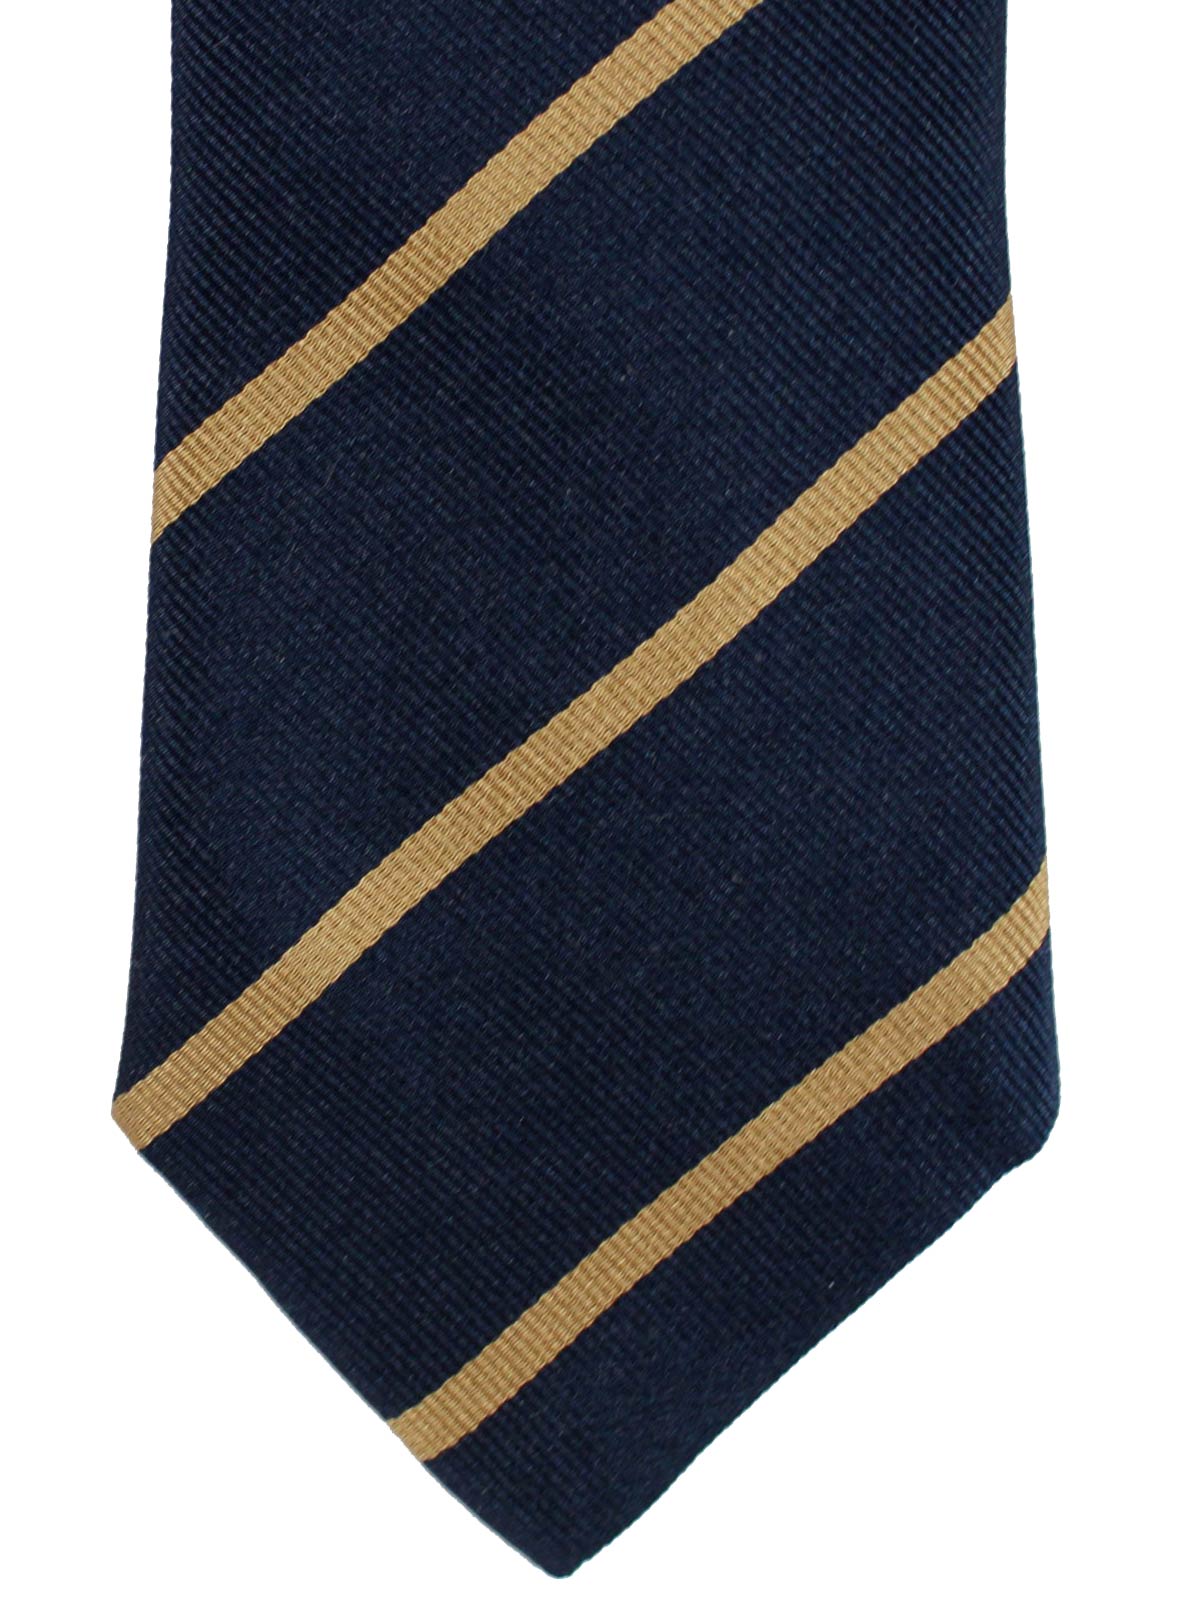 Brunello Cucinelli Silk Tie Navy Taupe Stripes